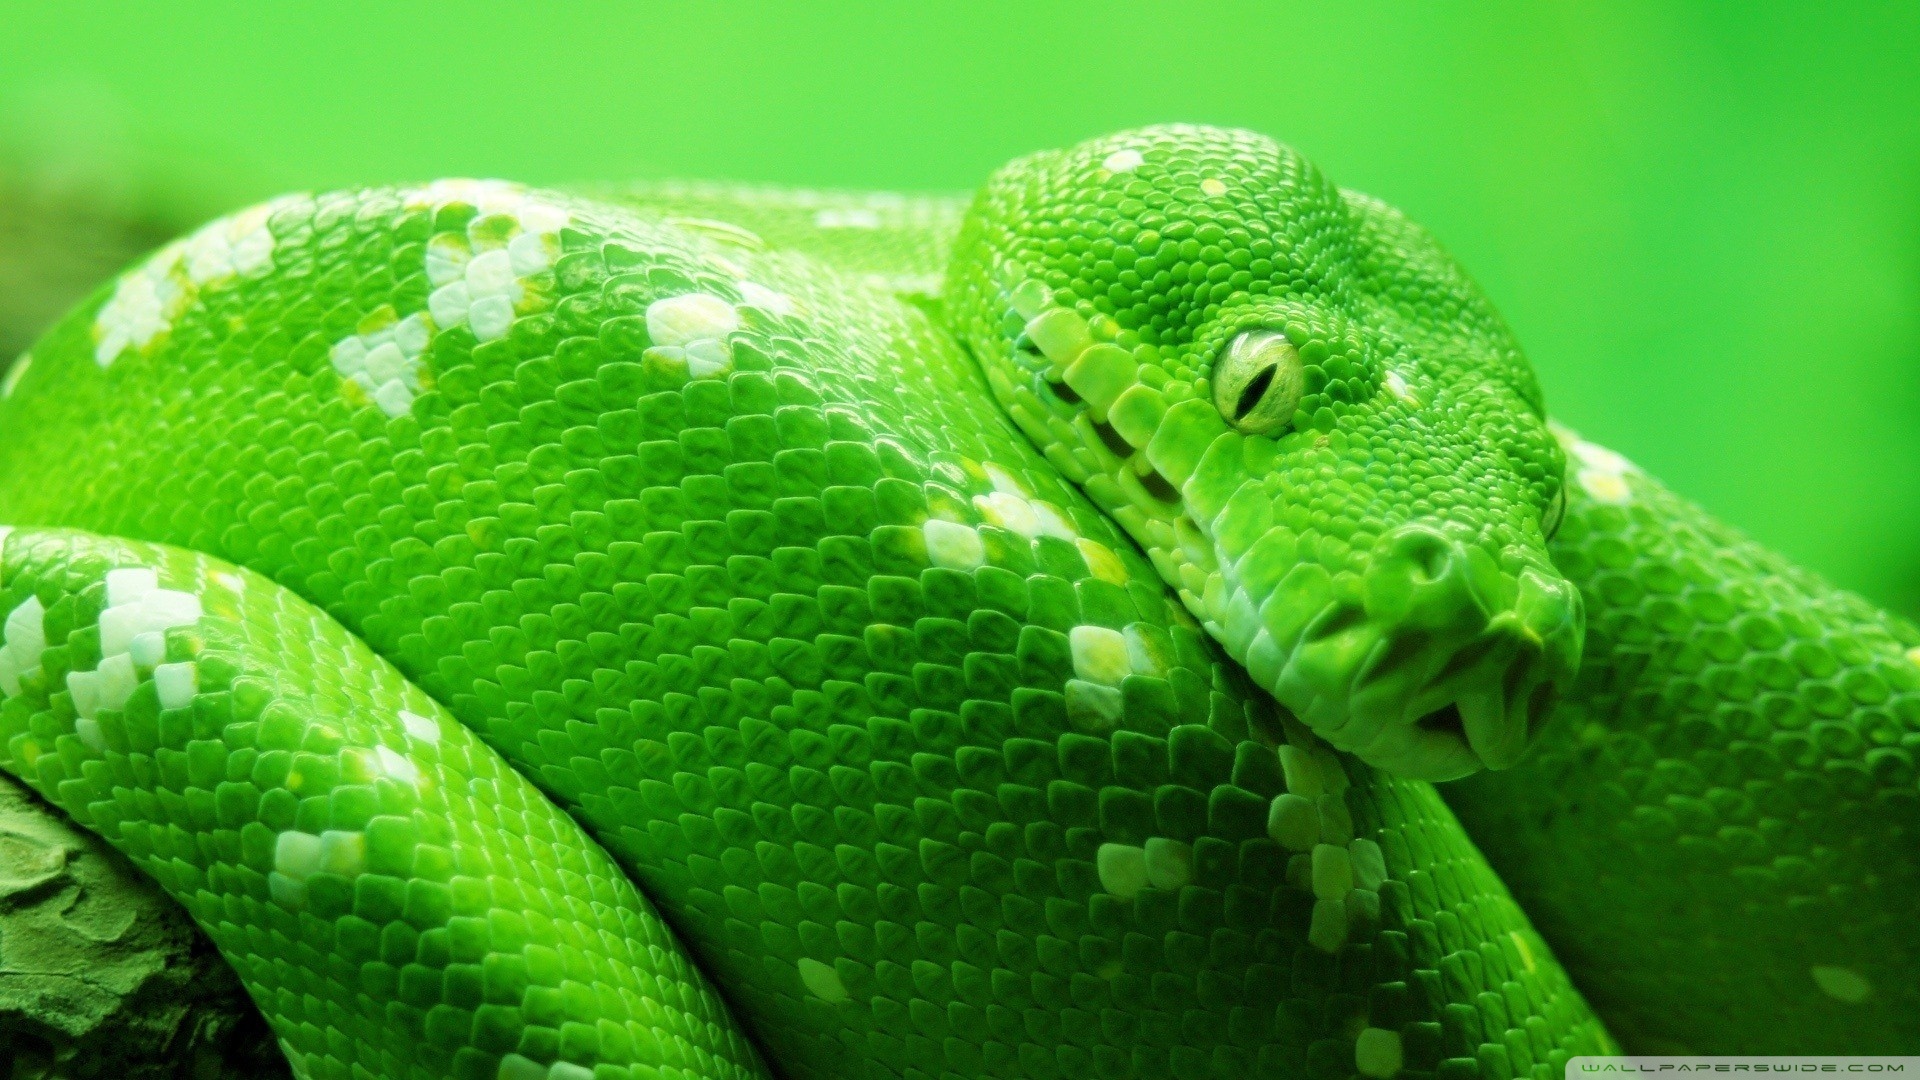 Descarga gratis la imagen Animales, Serpiente en el escritorio de tu PC